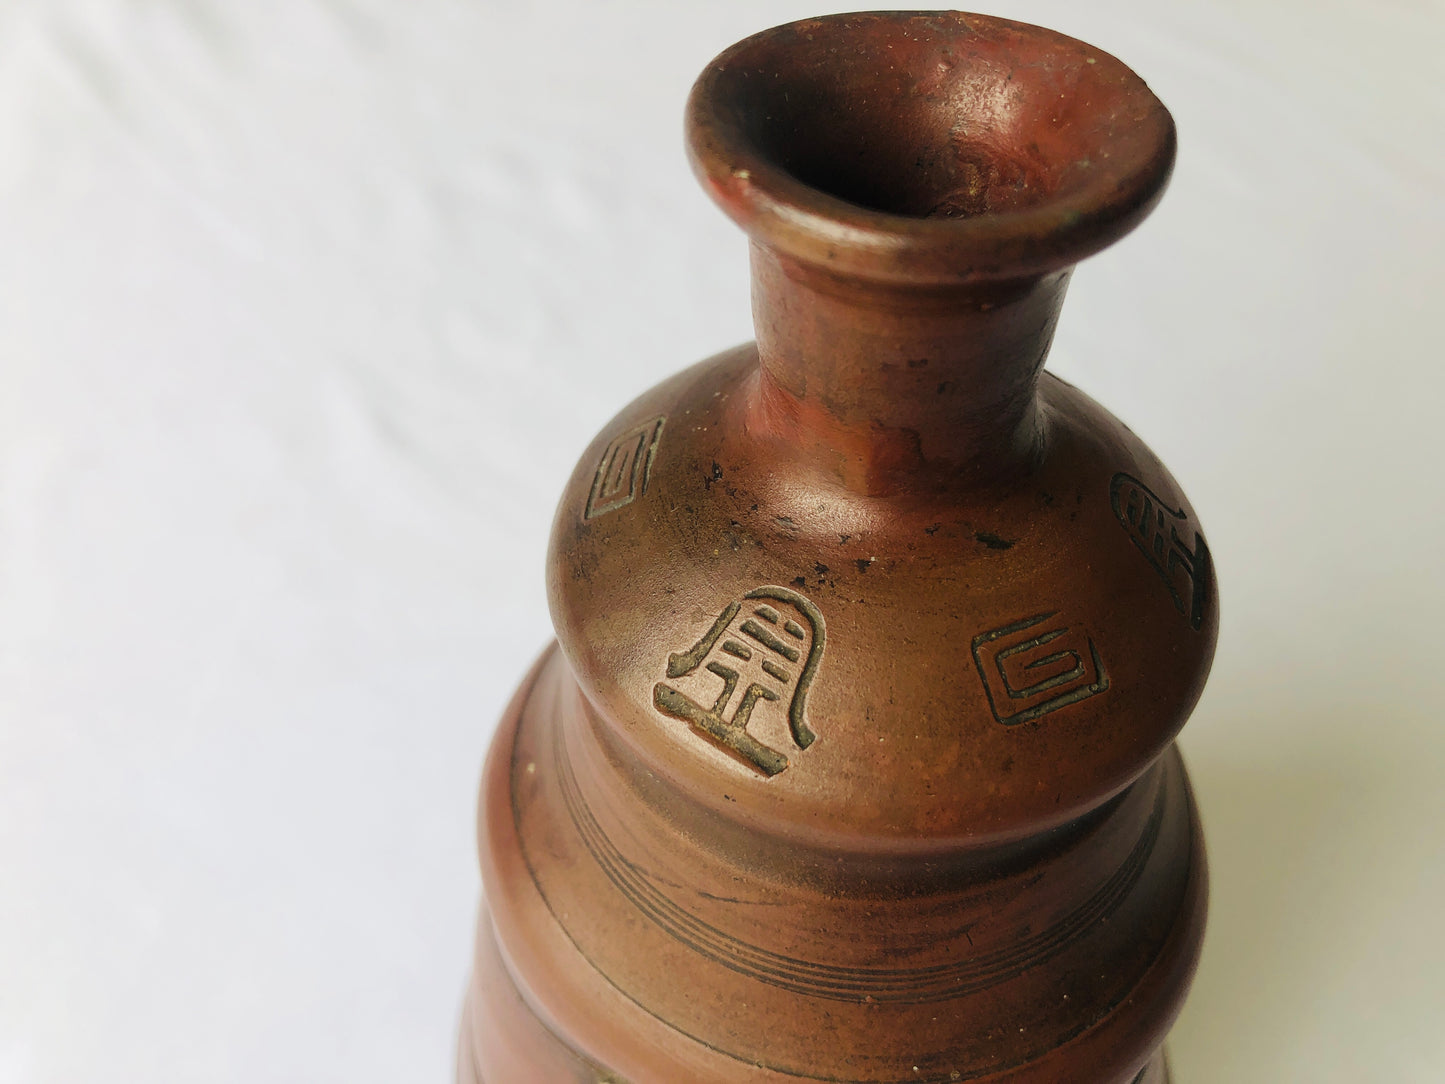 Y4608 CHOUSHI Bizen-ware Hotei Tokkuri sake bottle Japan antique tableware